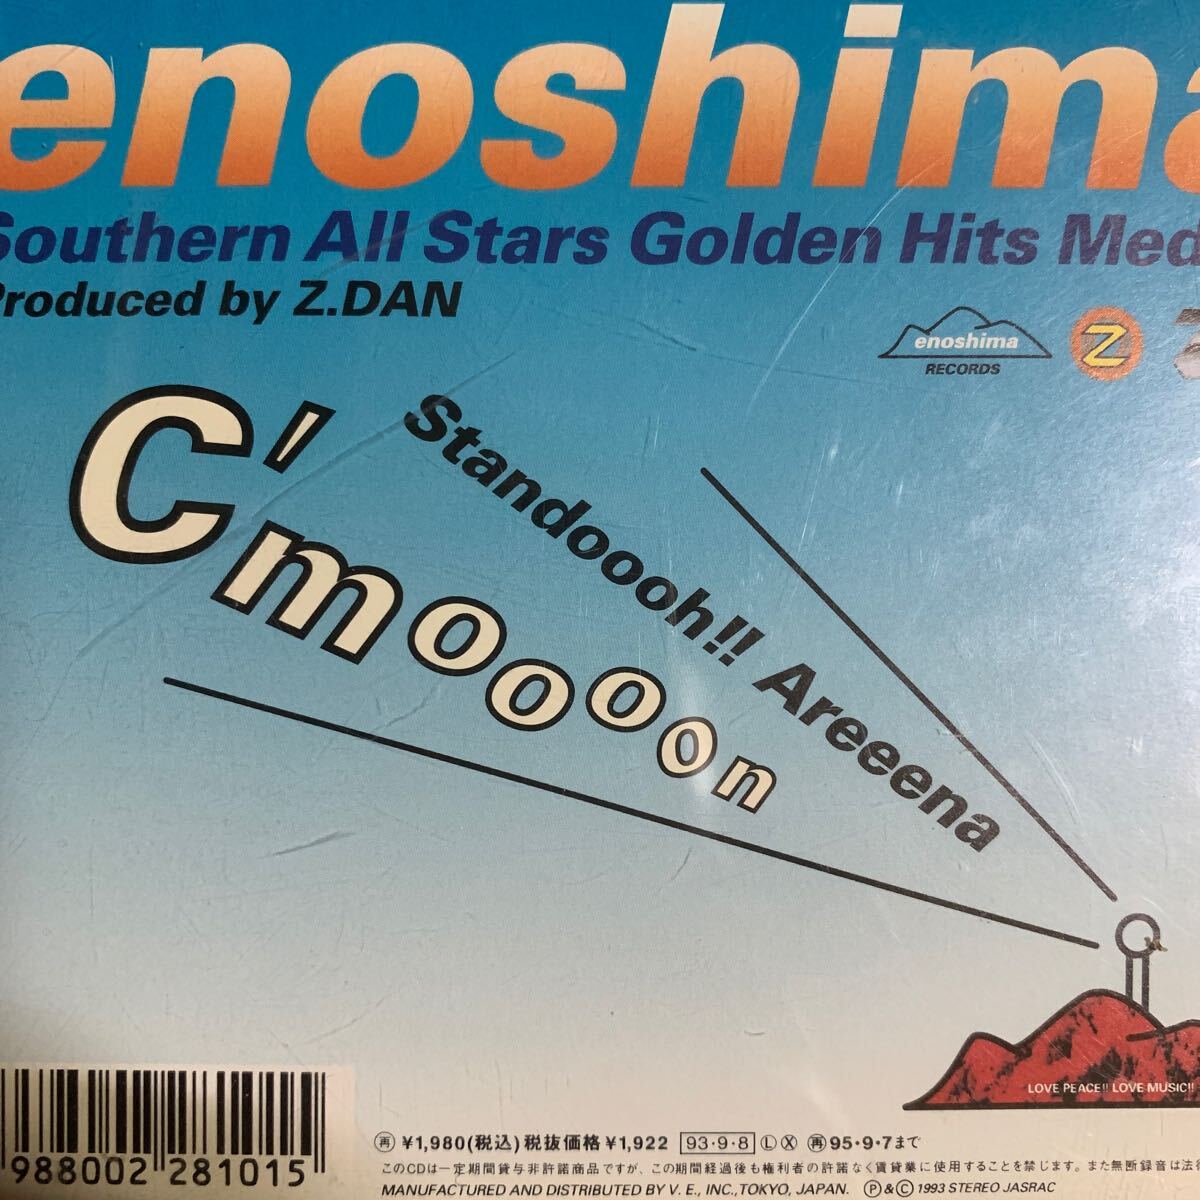 サザンオールスターズ ベストメドレーMIX盤『江ノ島 Southern All Stars Golden Hits Medley』_画像2